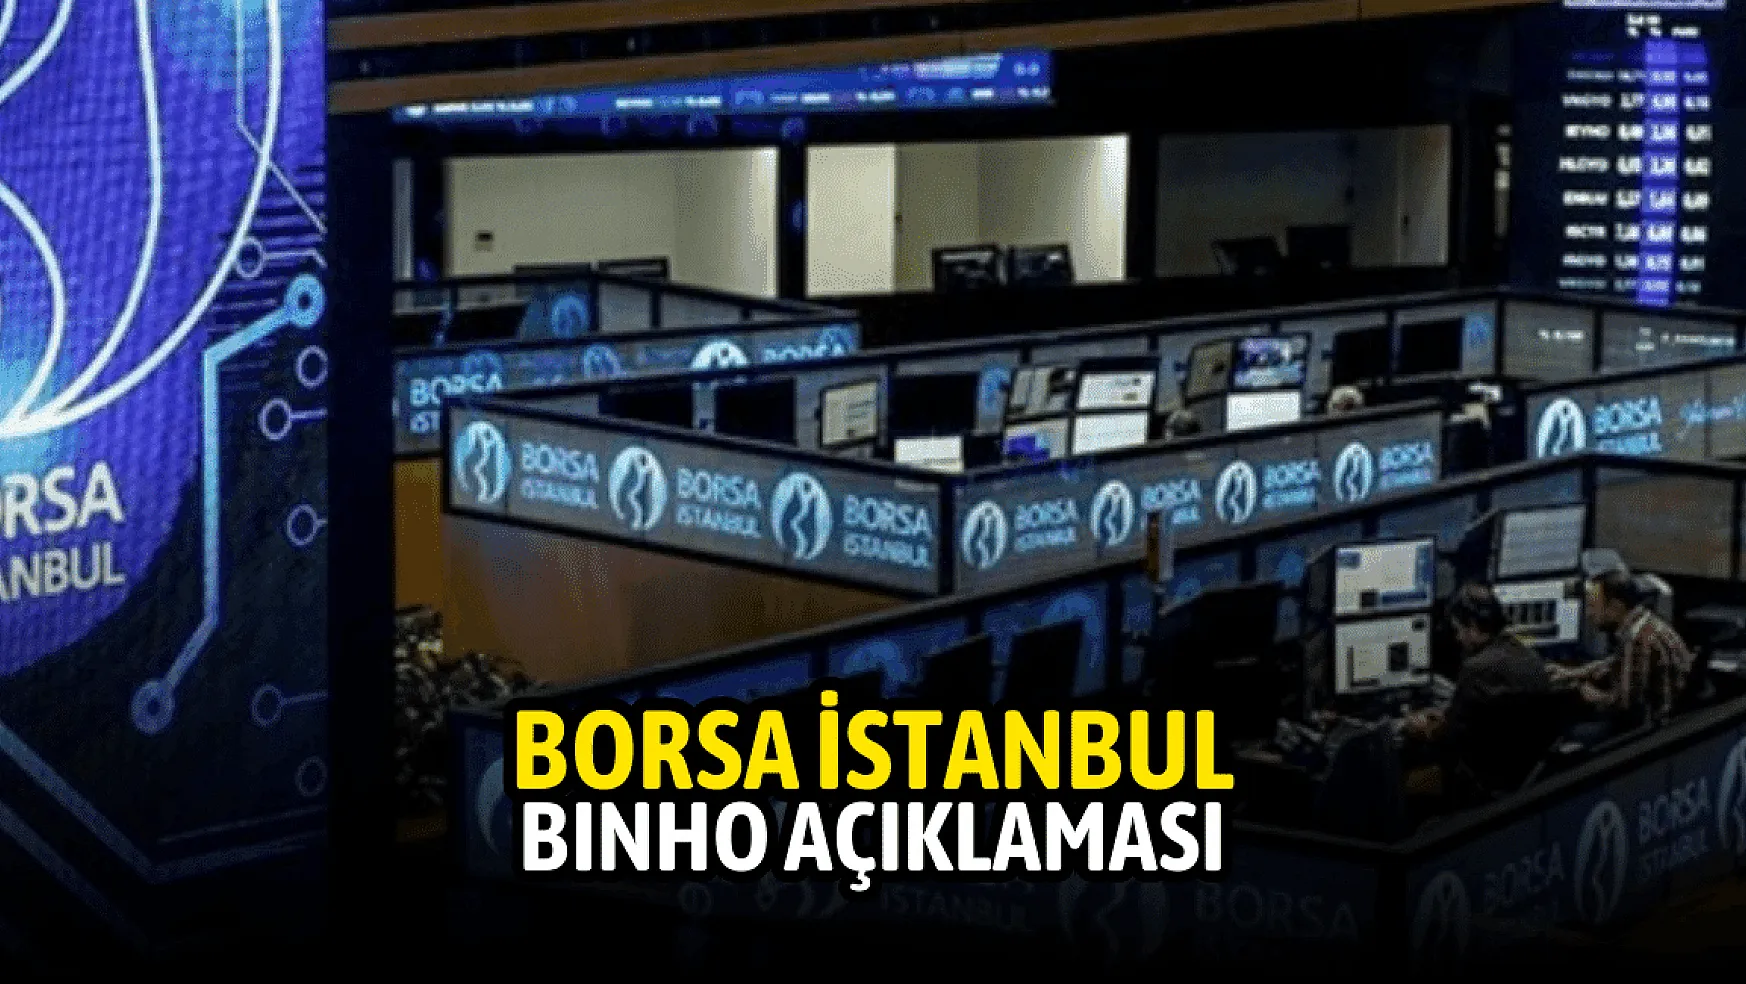 Borsa İstanbul'dan 1000 Yatırımlar Holding (BINHO) açıklaması!